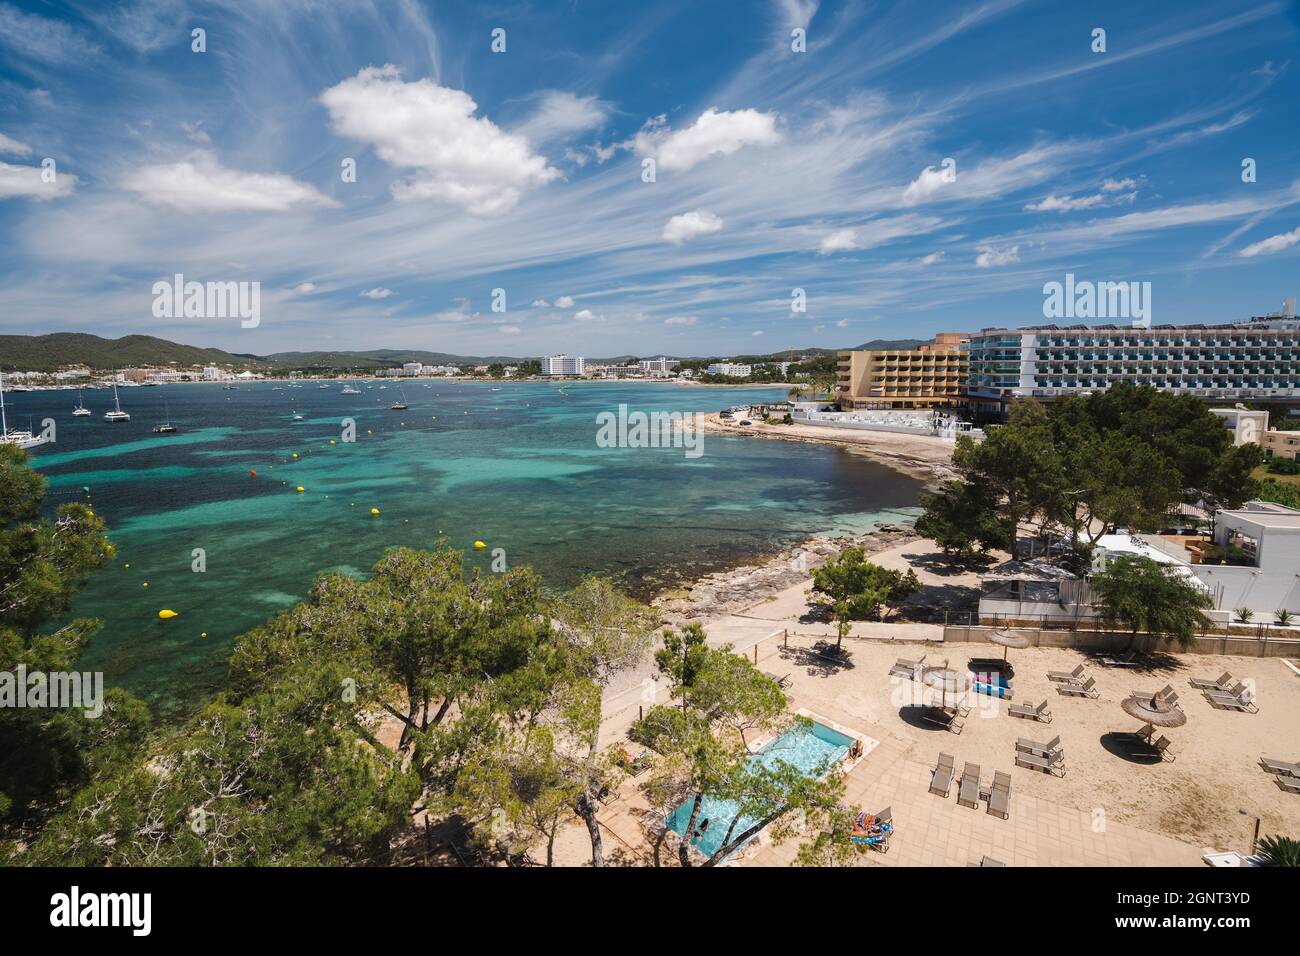 Vista sulla spiaggia e alberghi sulla riva, isola di Ibiza, Spagna Foto Stock